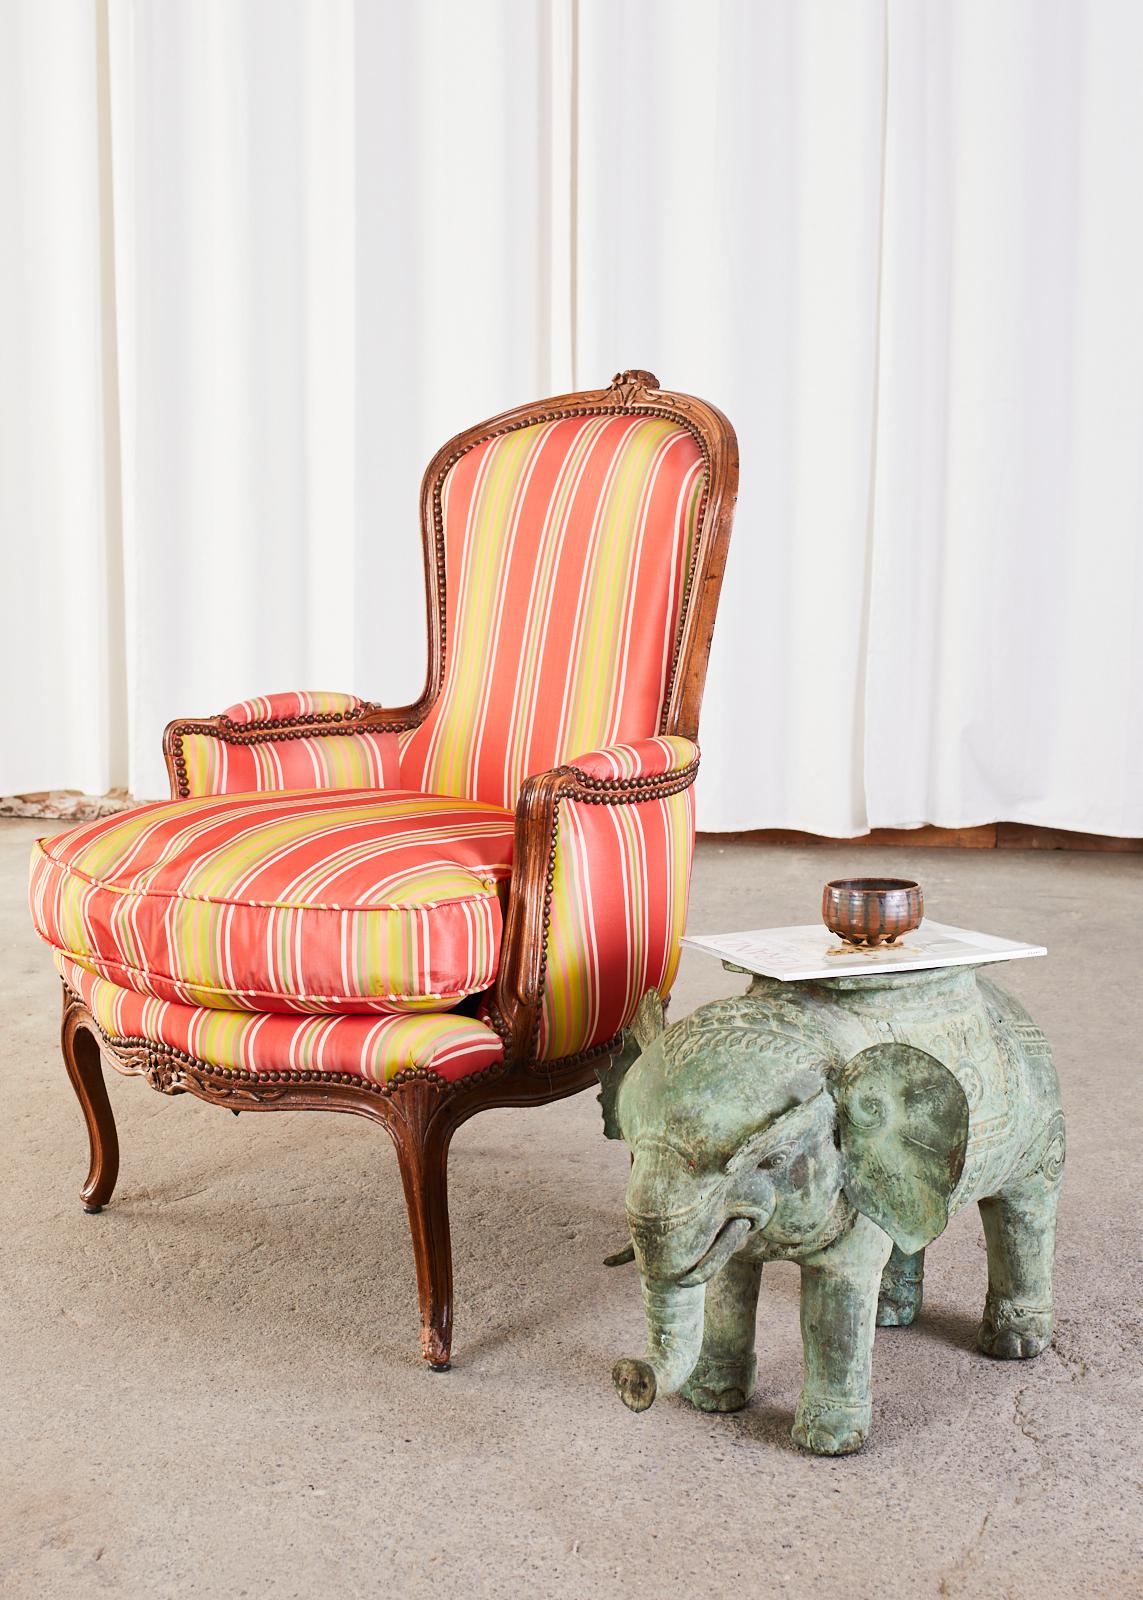 Auffallend restauriertes Paar französischer Bergere-Sessel aus Nussbaum aus dem 19. Jahrhundert. Nahezu identisch in einem Stil für Sie und Ihn, wobei ein Stuhl an der Rückenlehne 2 Zentimeter höher ist und oben eine größere Blumenverzierung